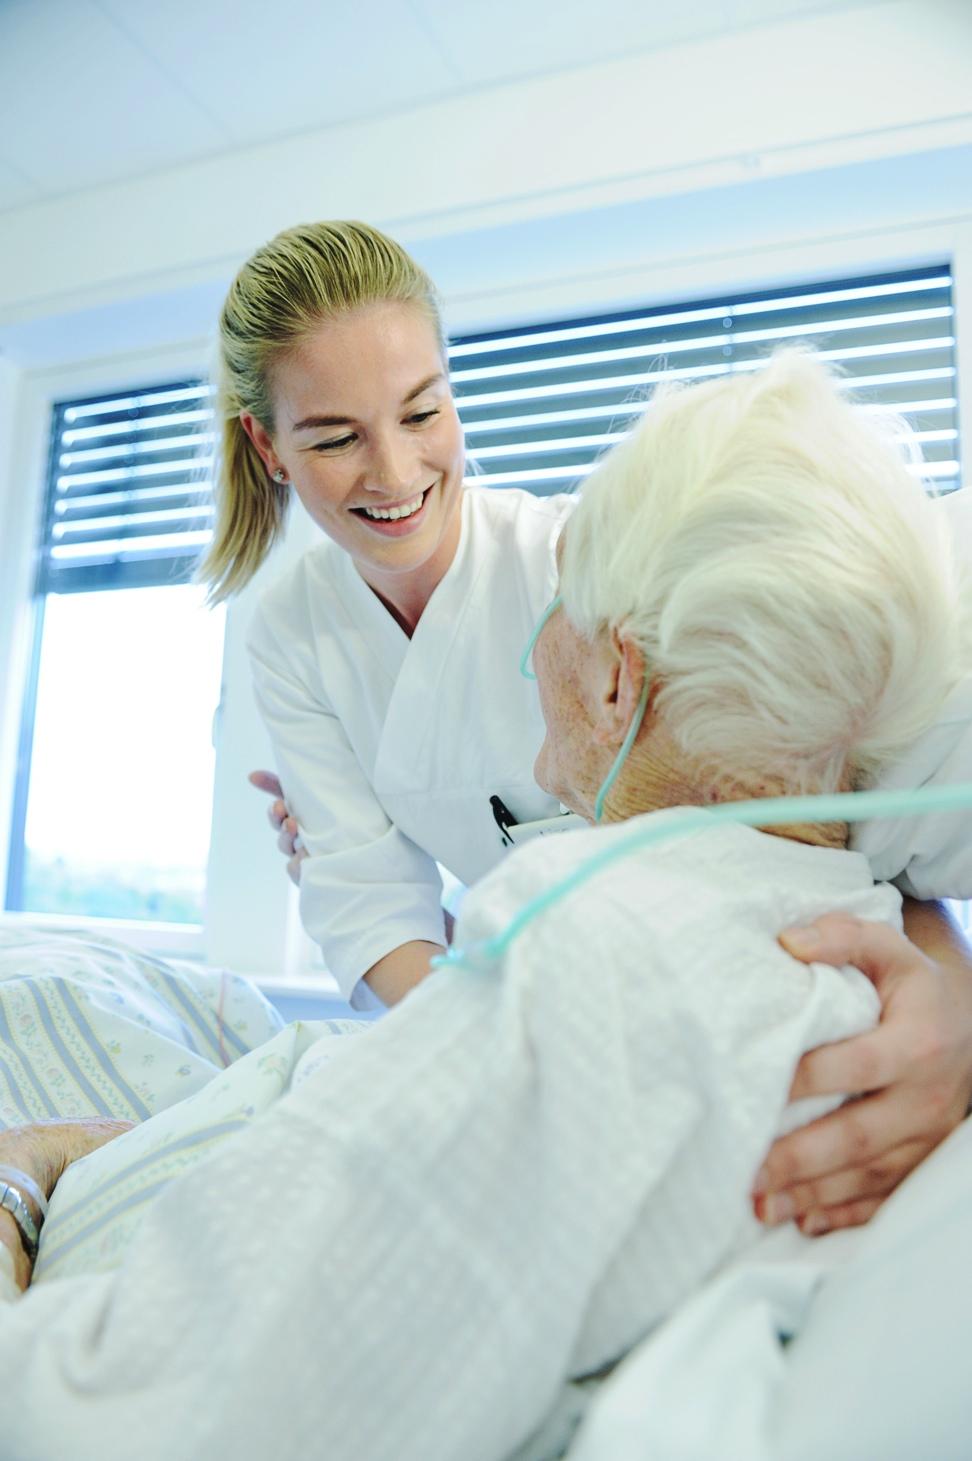 Hva er beste behandling for din gamle pasient som blir